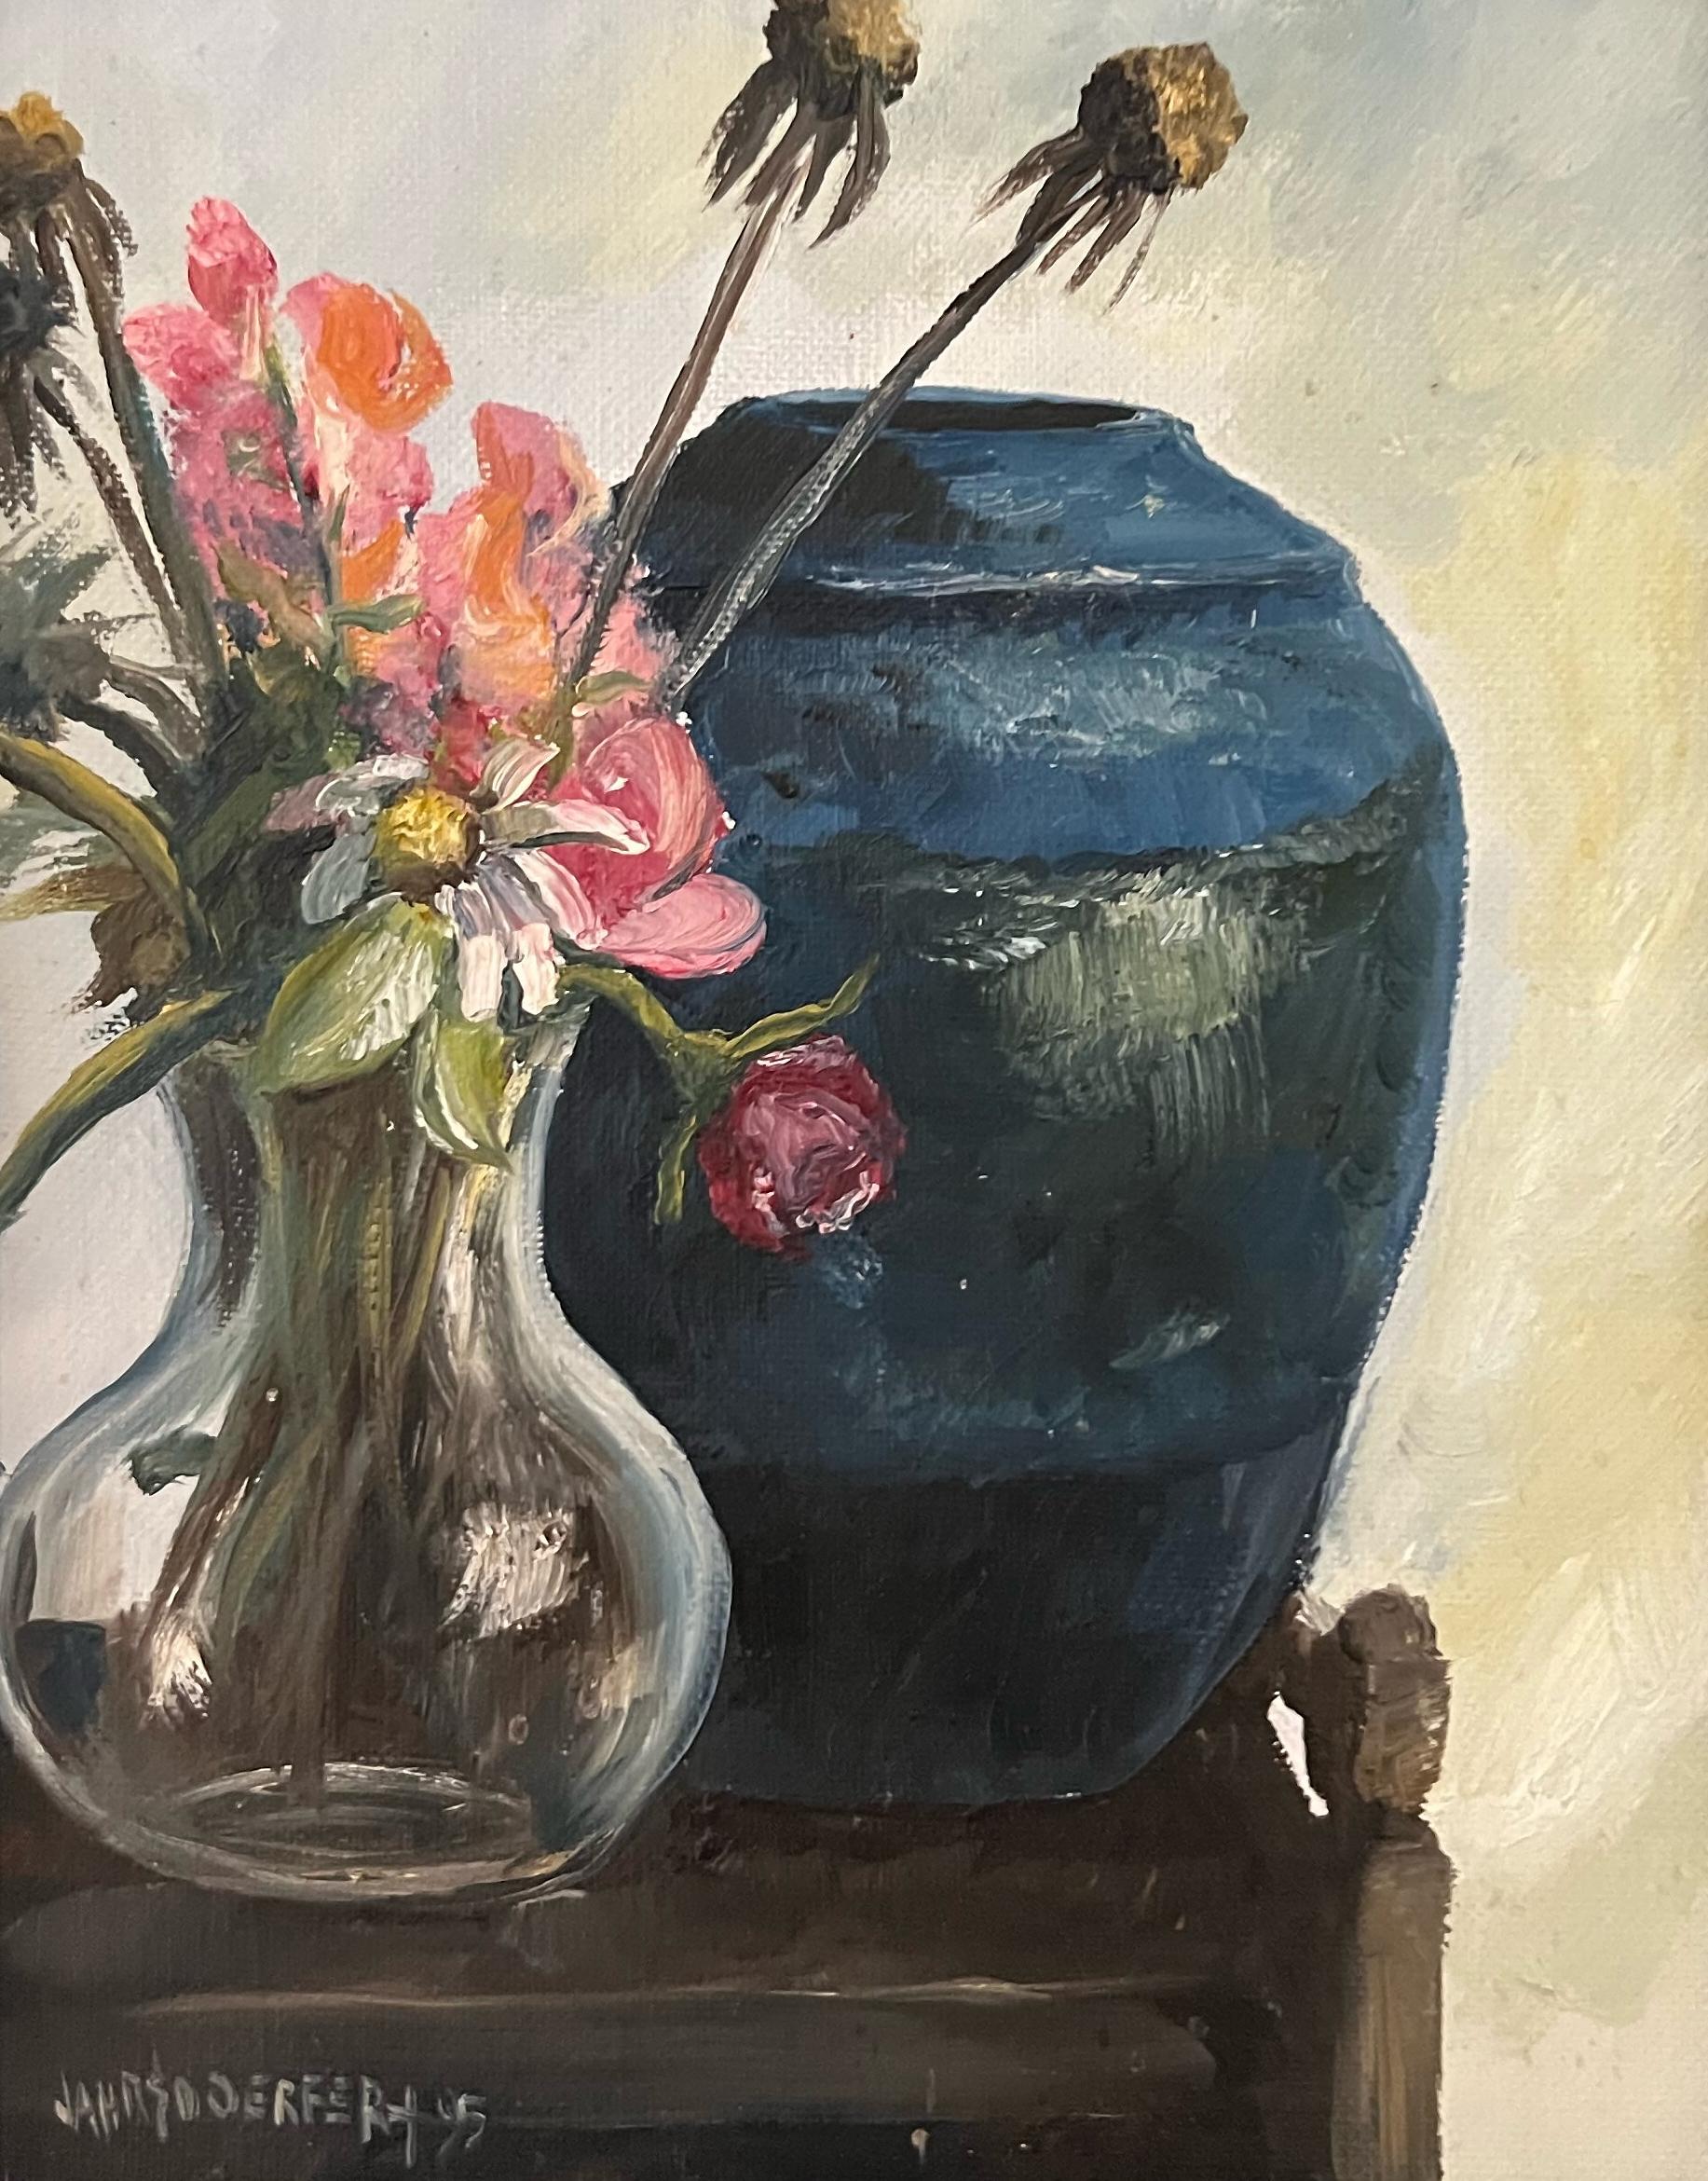 Cette œuvre, "Springtime in Still", est une peinture à l'huile sur toile 10x8 de l'artiste James Jarhsdoerfer représentant un vase en verre rempli de fleurs blanches et roses fraîchement coupées du jardin. Une cruche en céramique bleue est posée sur